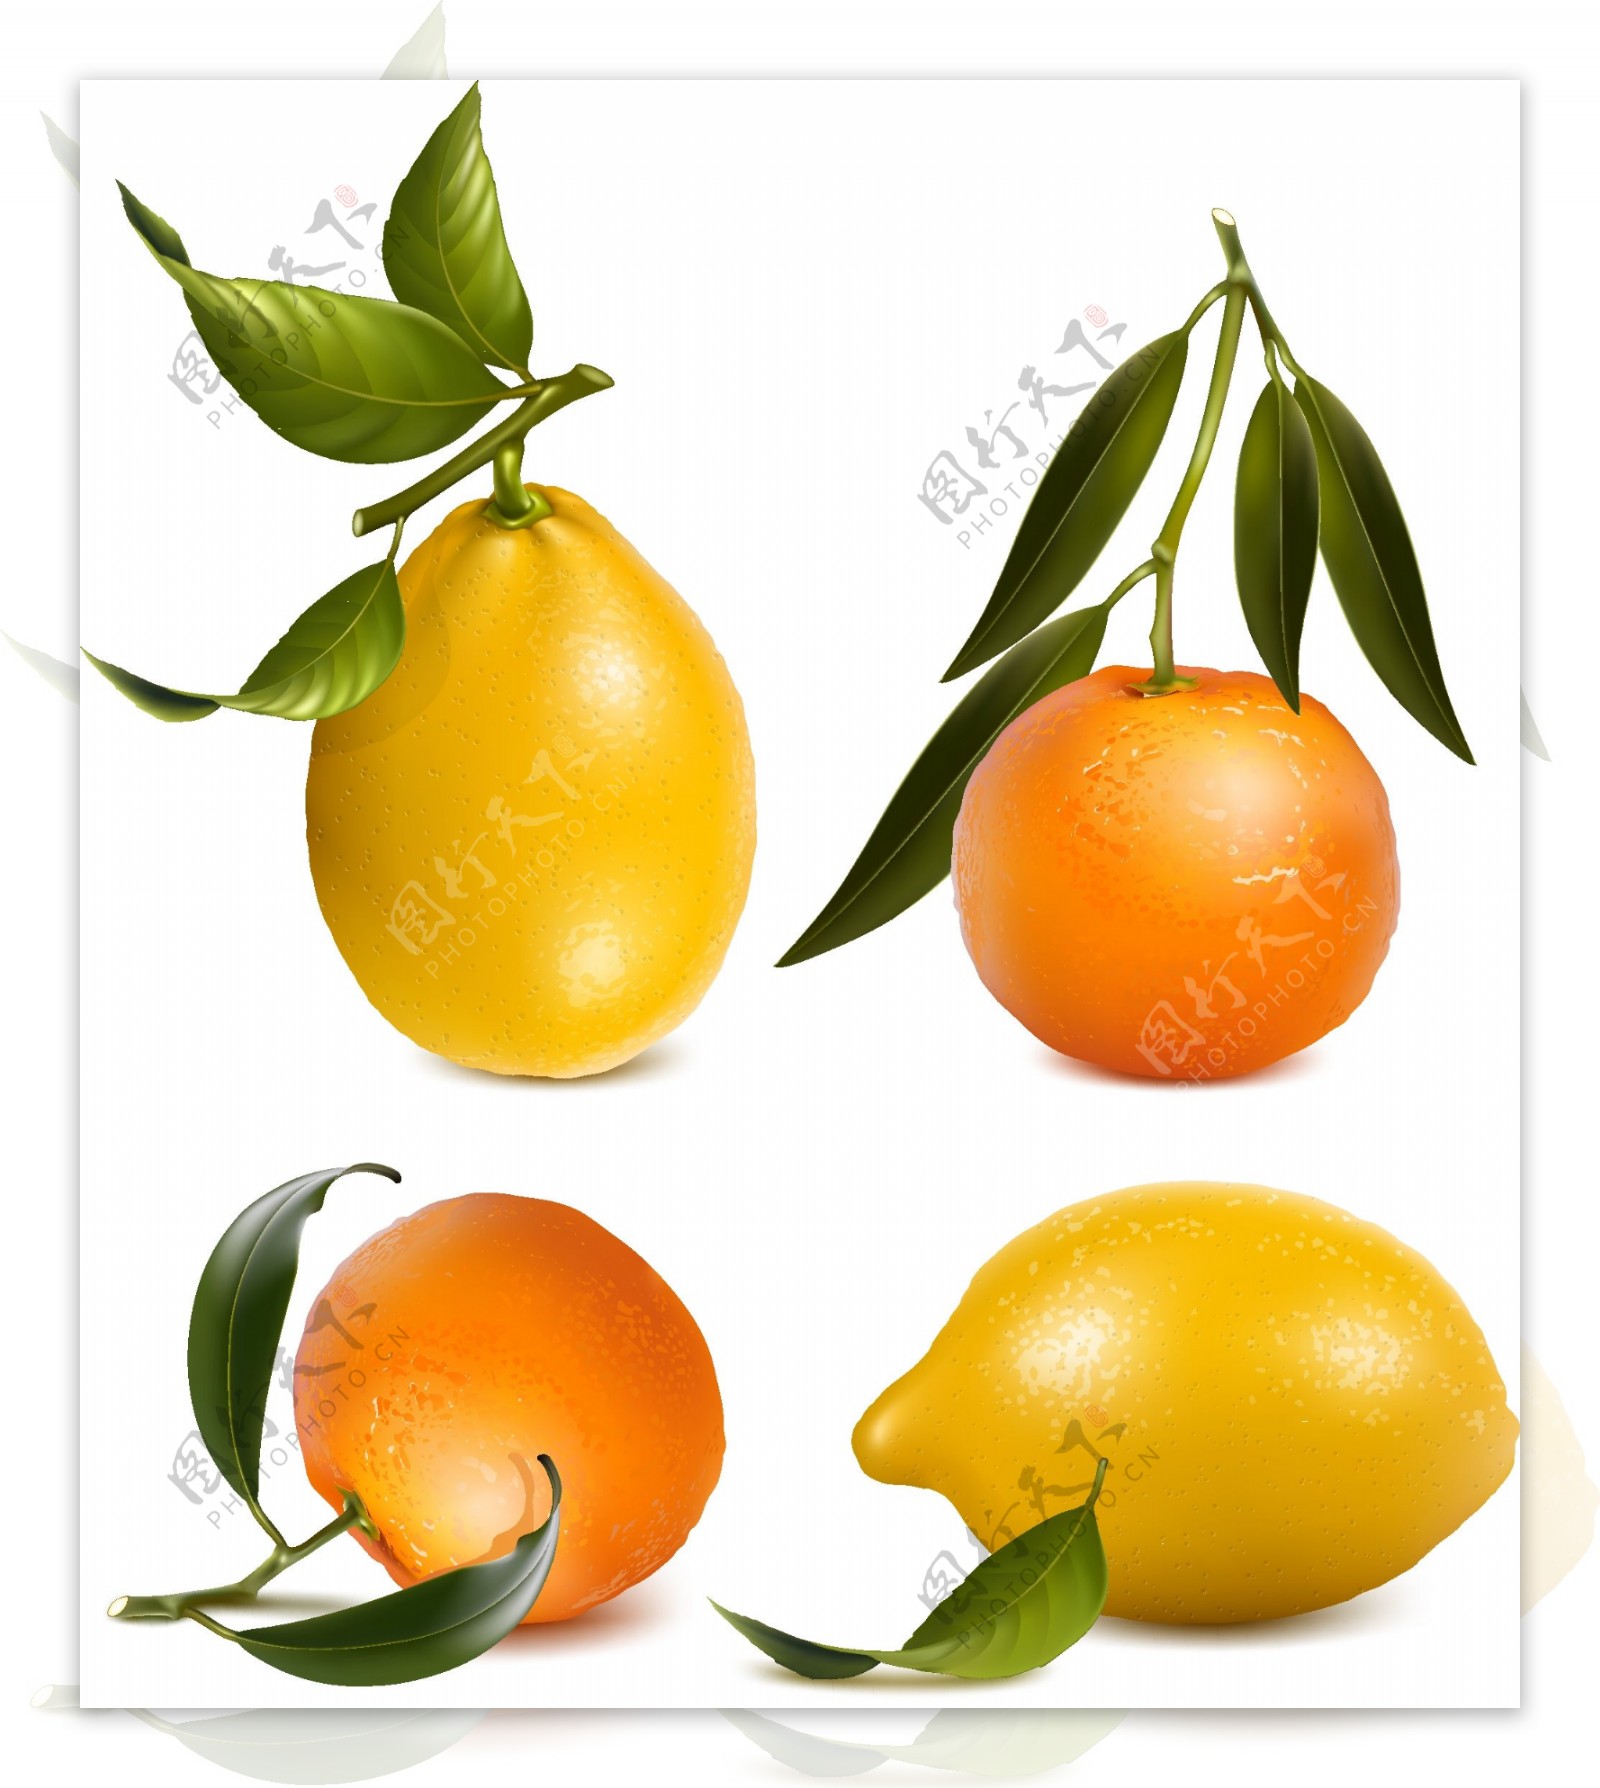 4款新鲜橙子和柠檬矢量素材